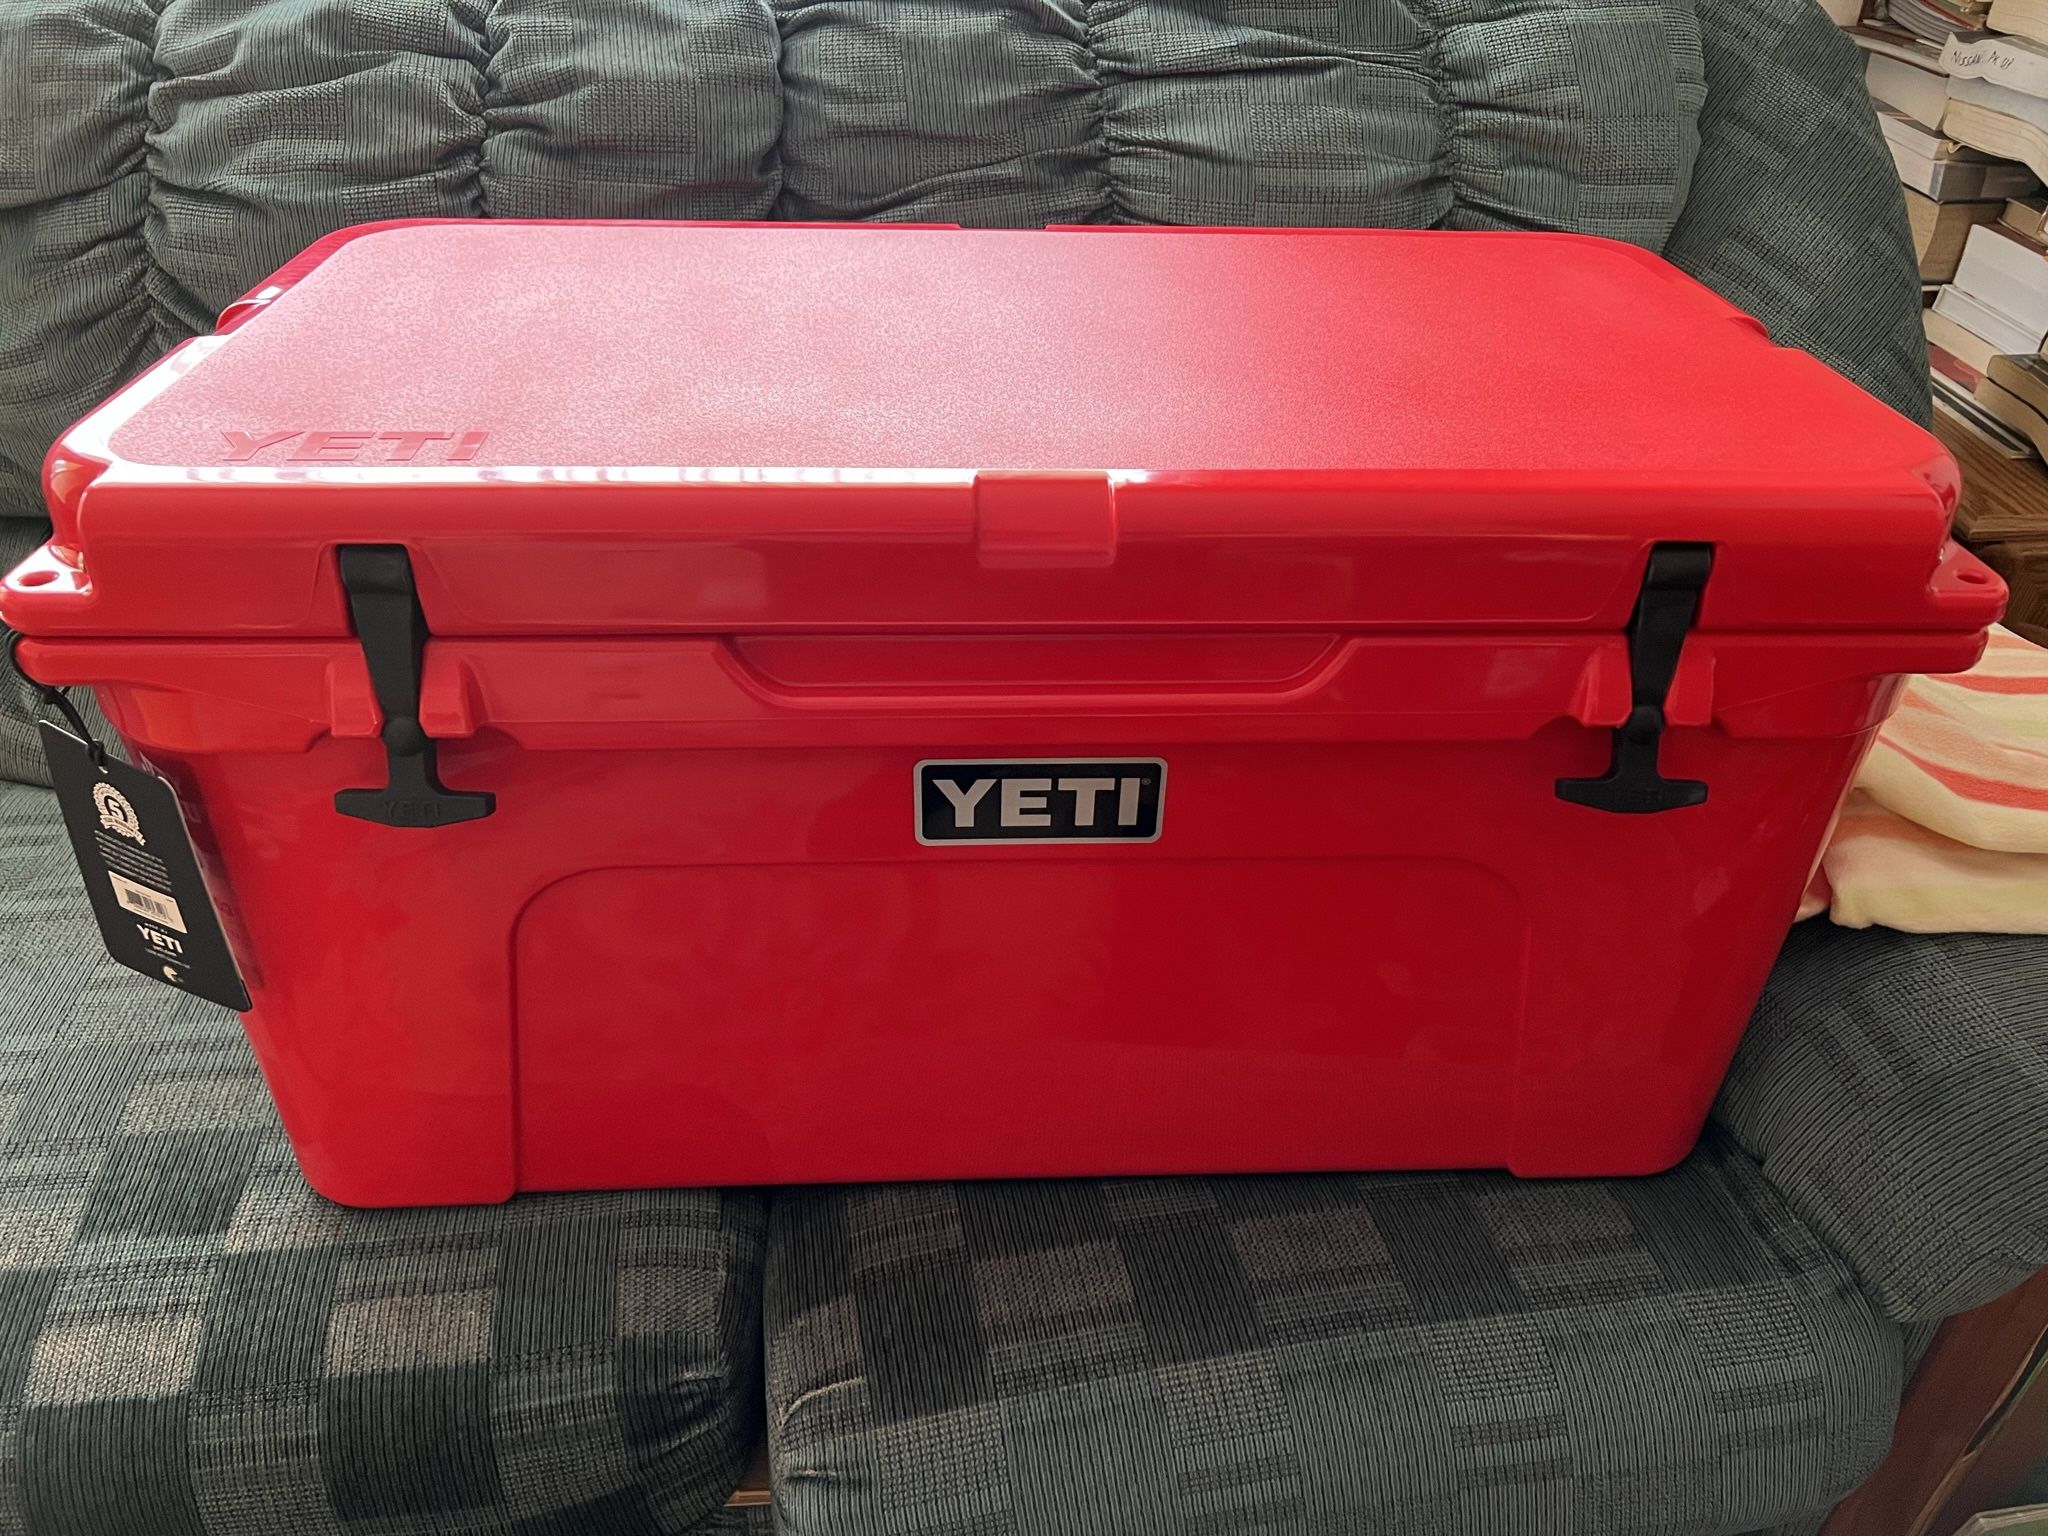 Yeti Tundra 65 Rescue Red brand New 